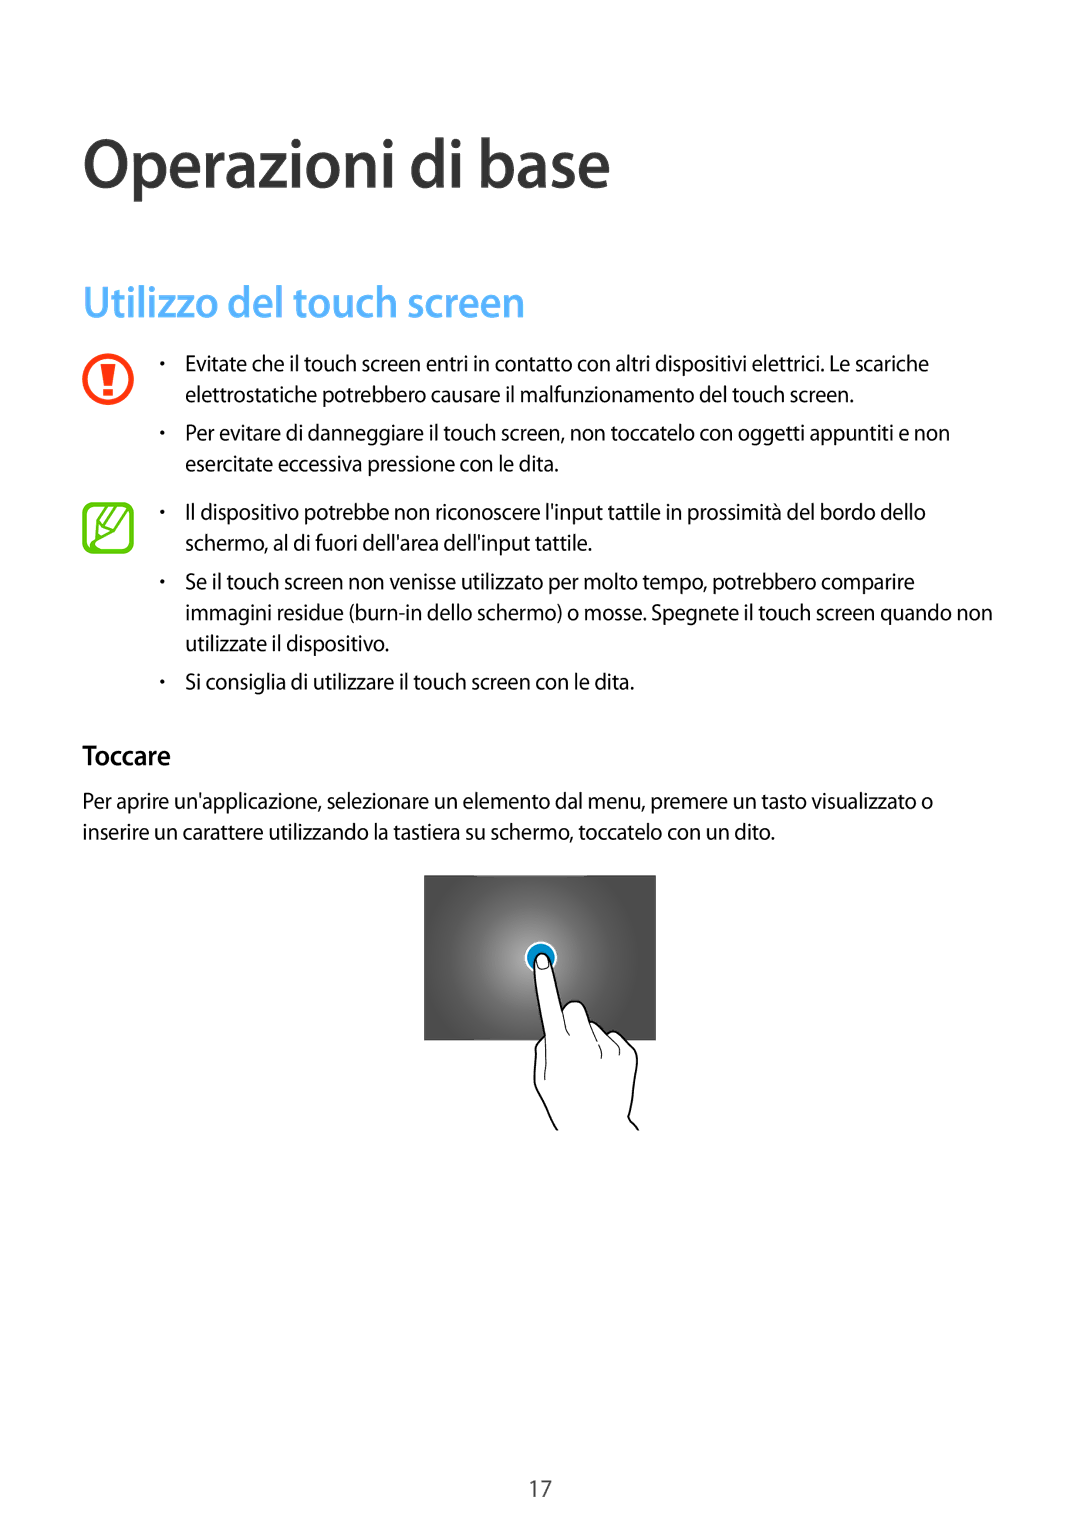 Samsung SM-T805NTSATIM, SM-T805NZWAXEO, SM-T805NTSAITV manual Operazioni di base, Utilizzo del touch screen, Toccare 